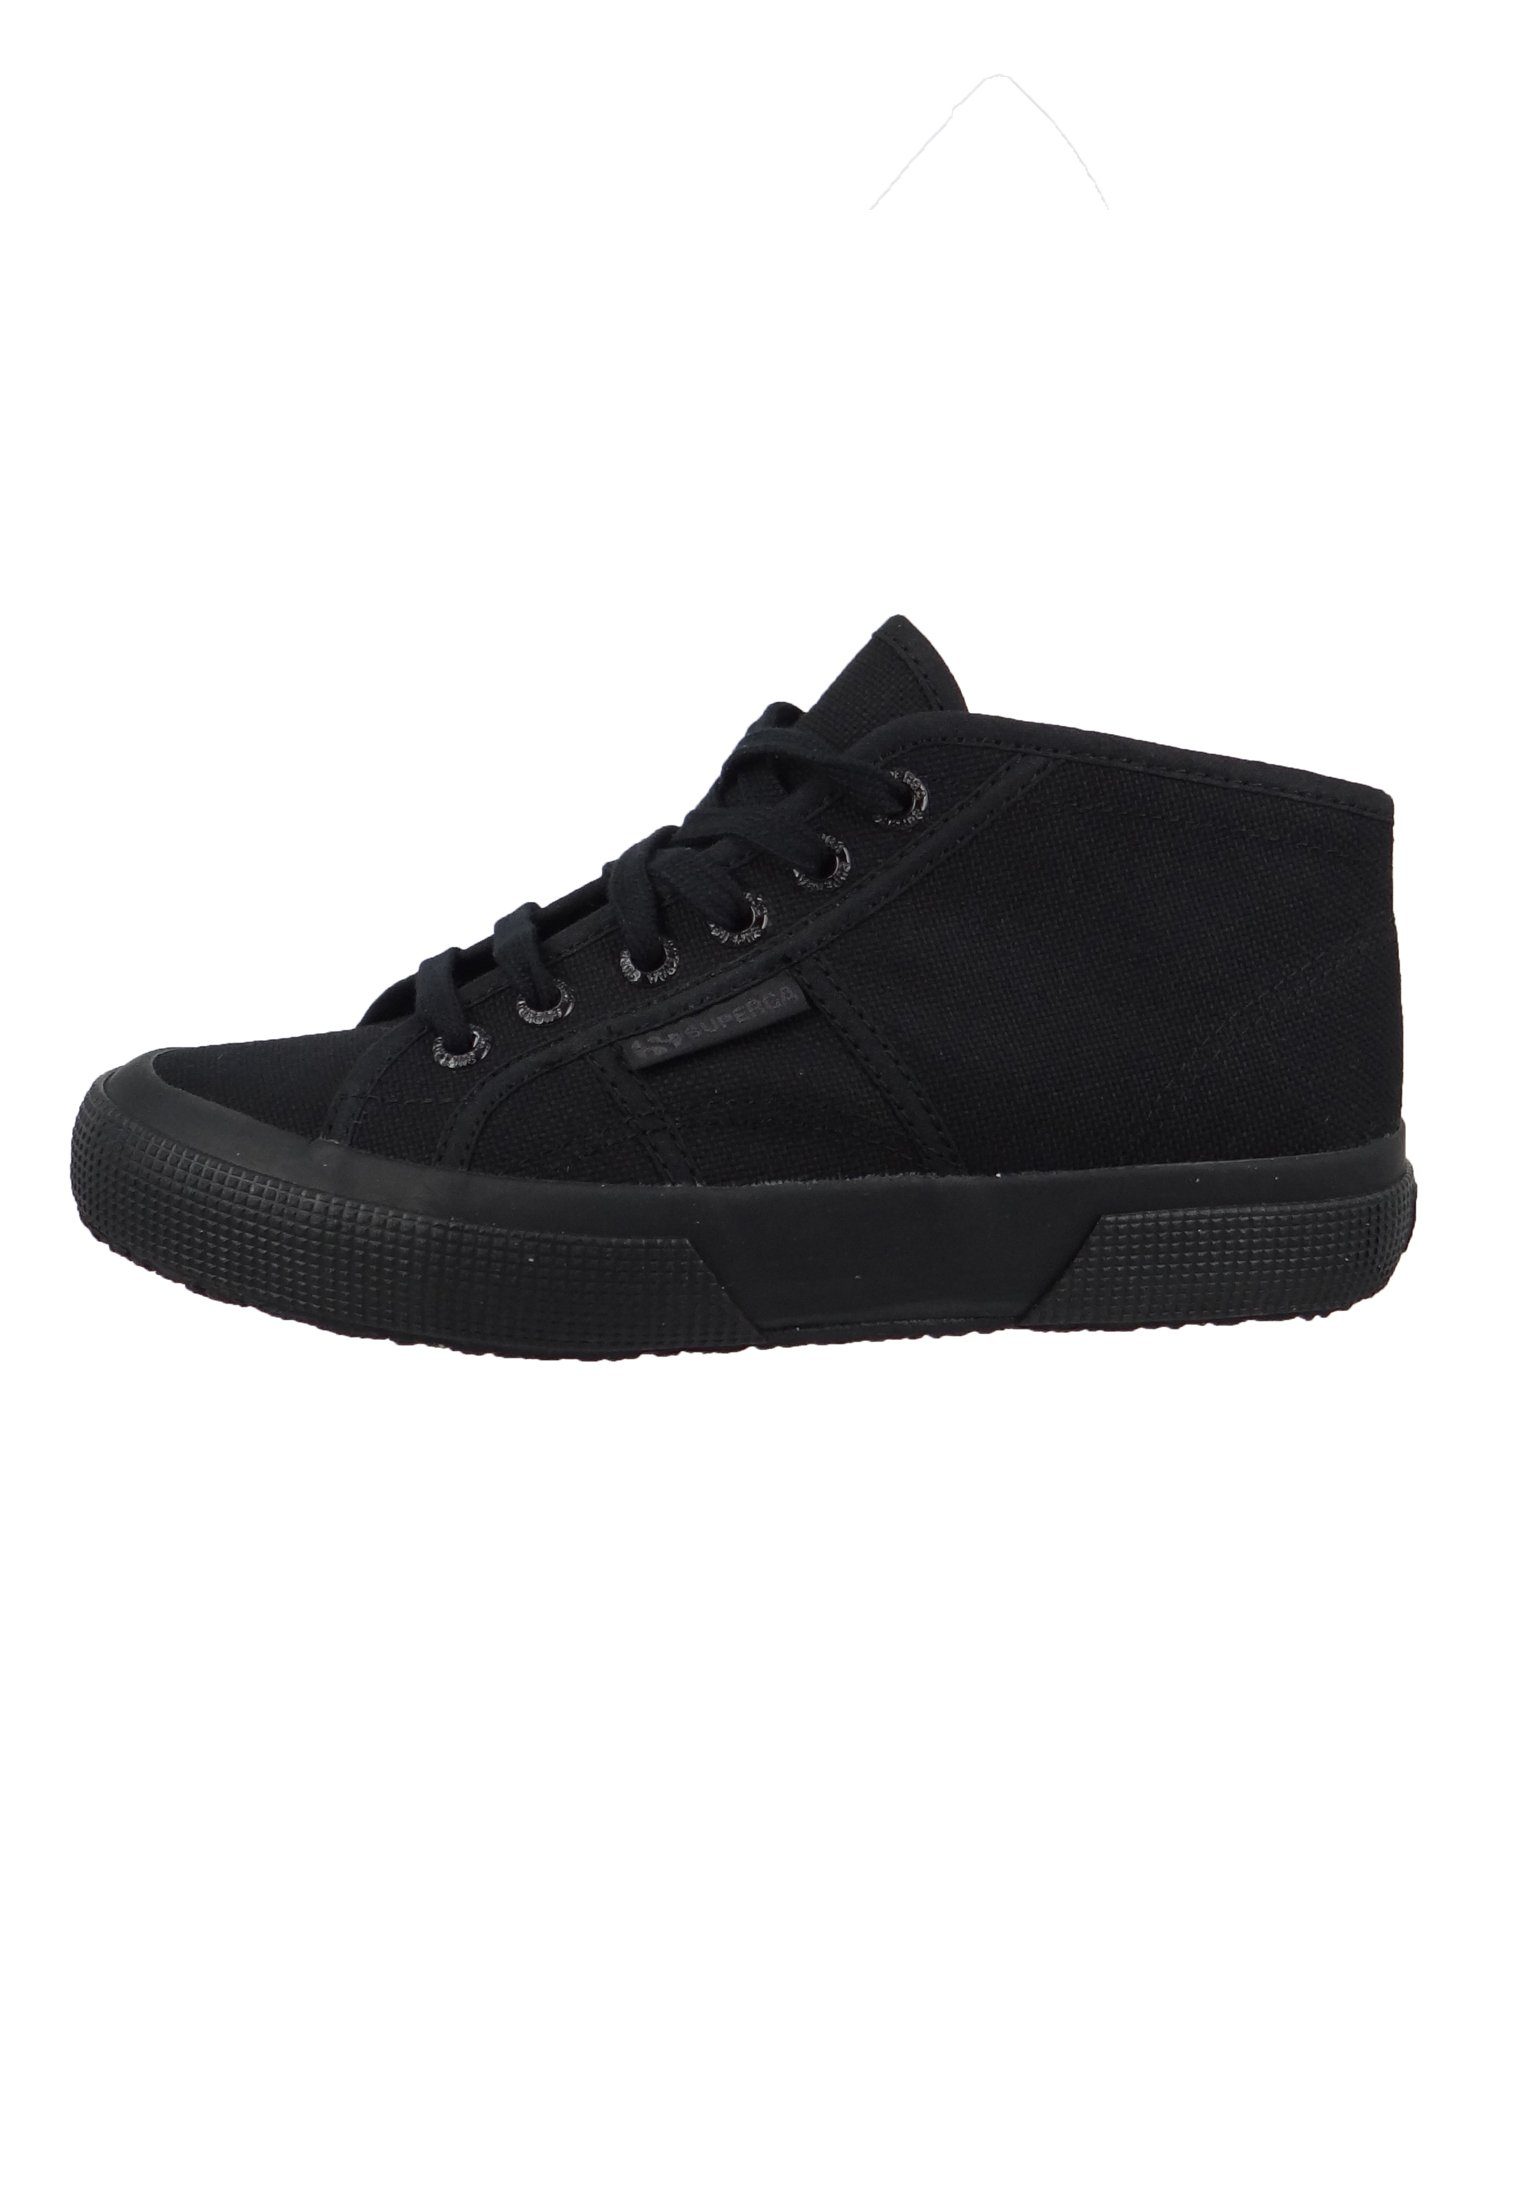 Schuhe Alle Sneaker Superga S000920-2754 997 total Black Sneaker